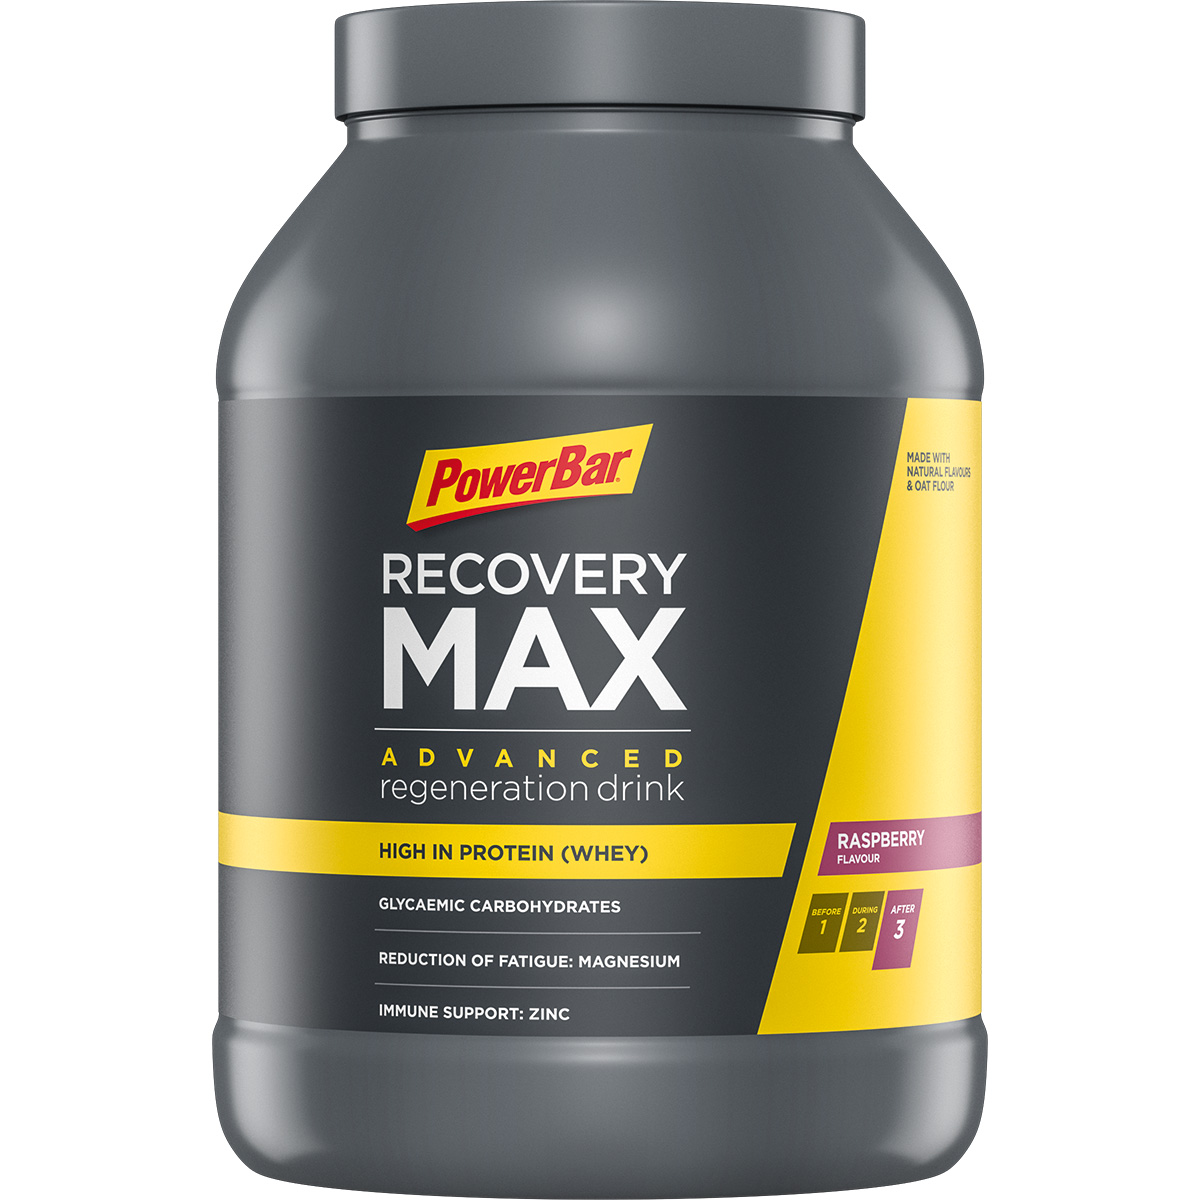 Bild von PowerBar Recovery Max 1144g - Raspberry - Regeneration Drink